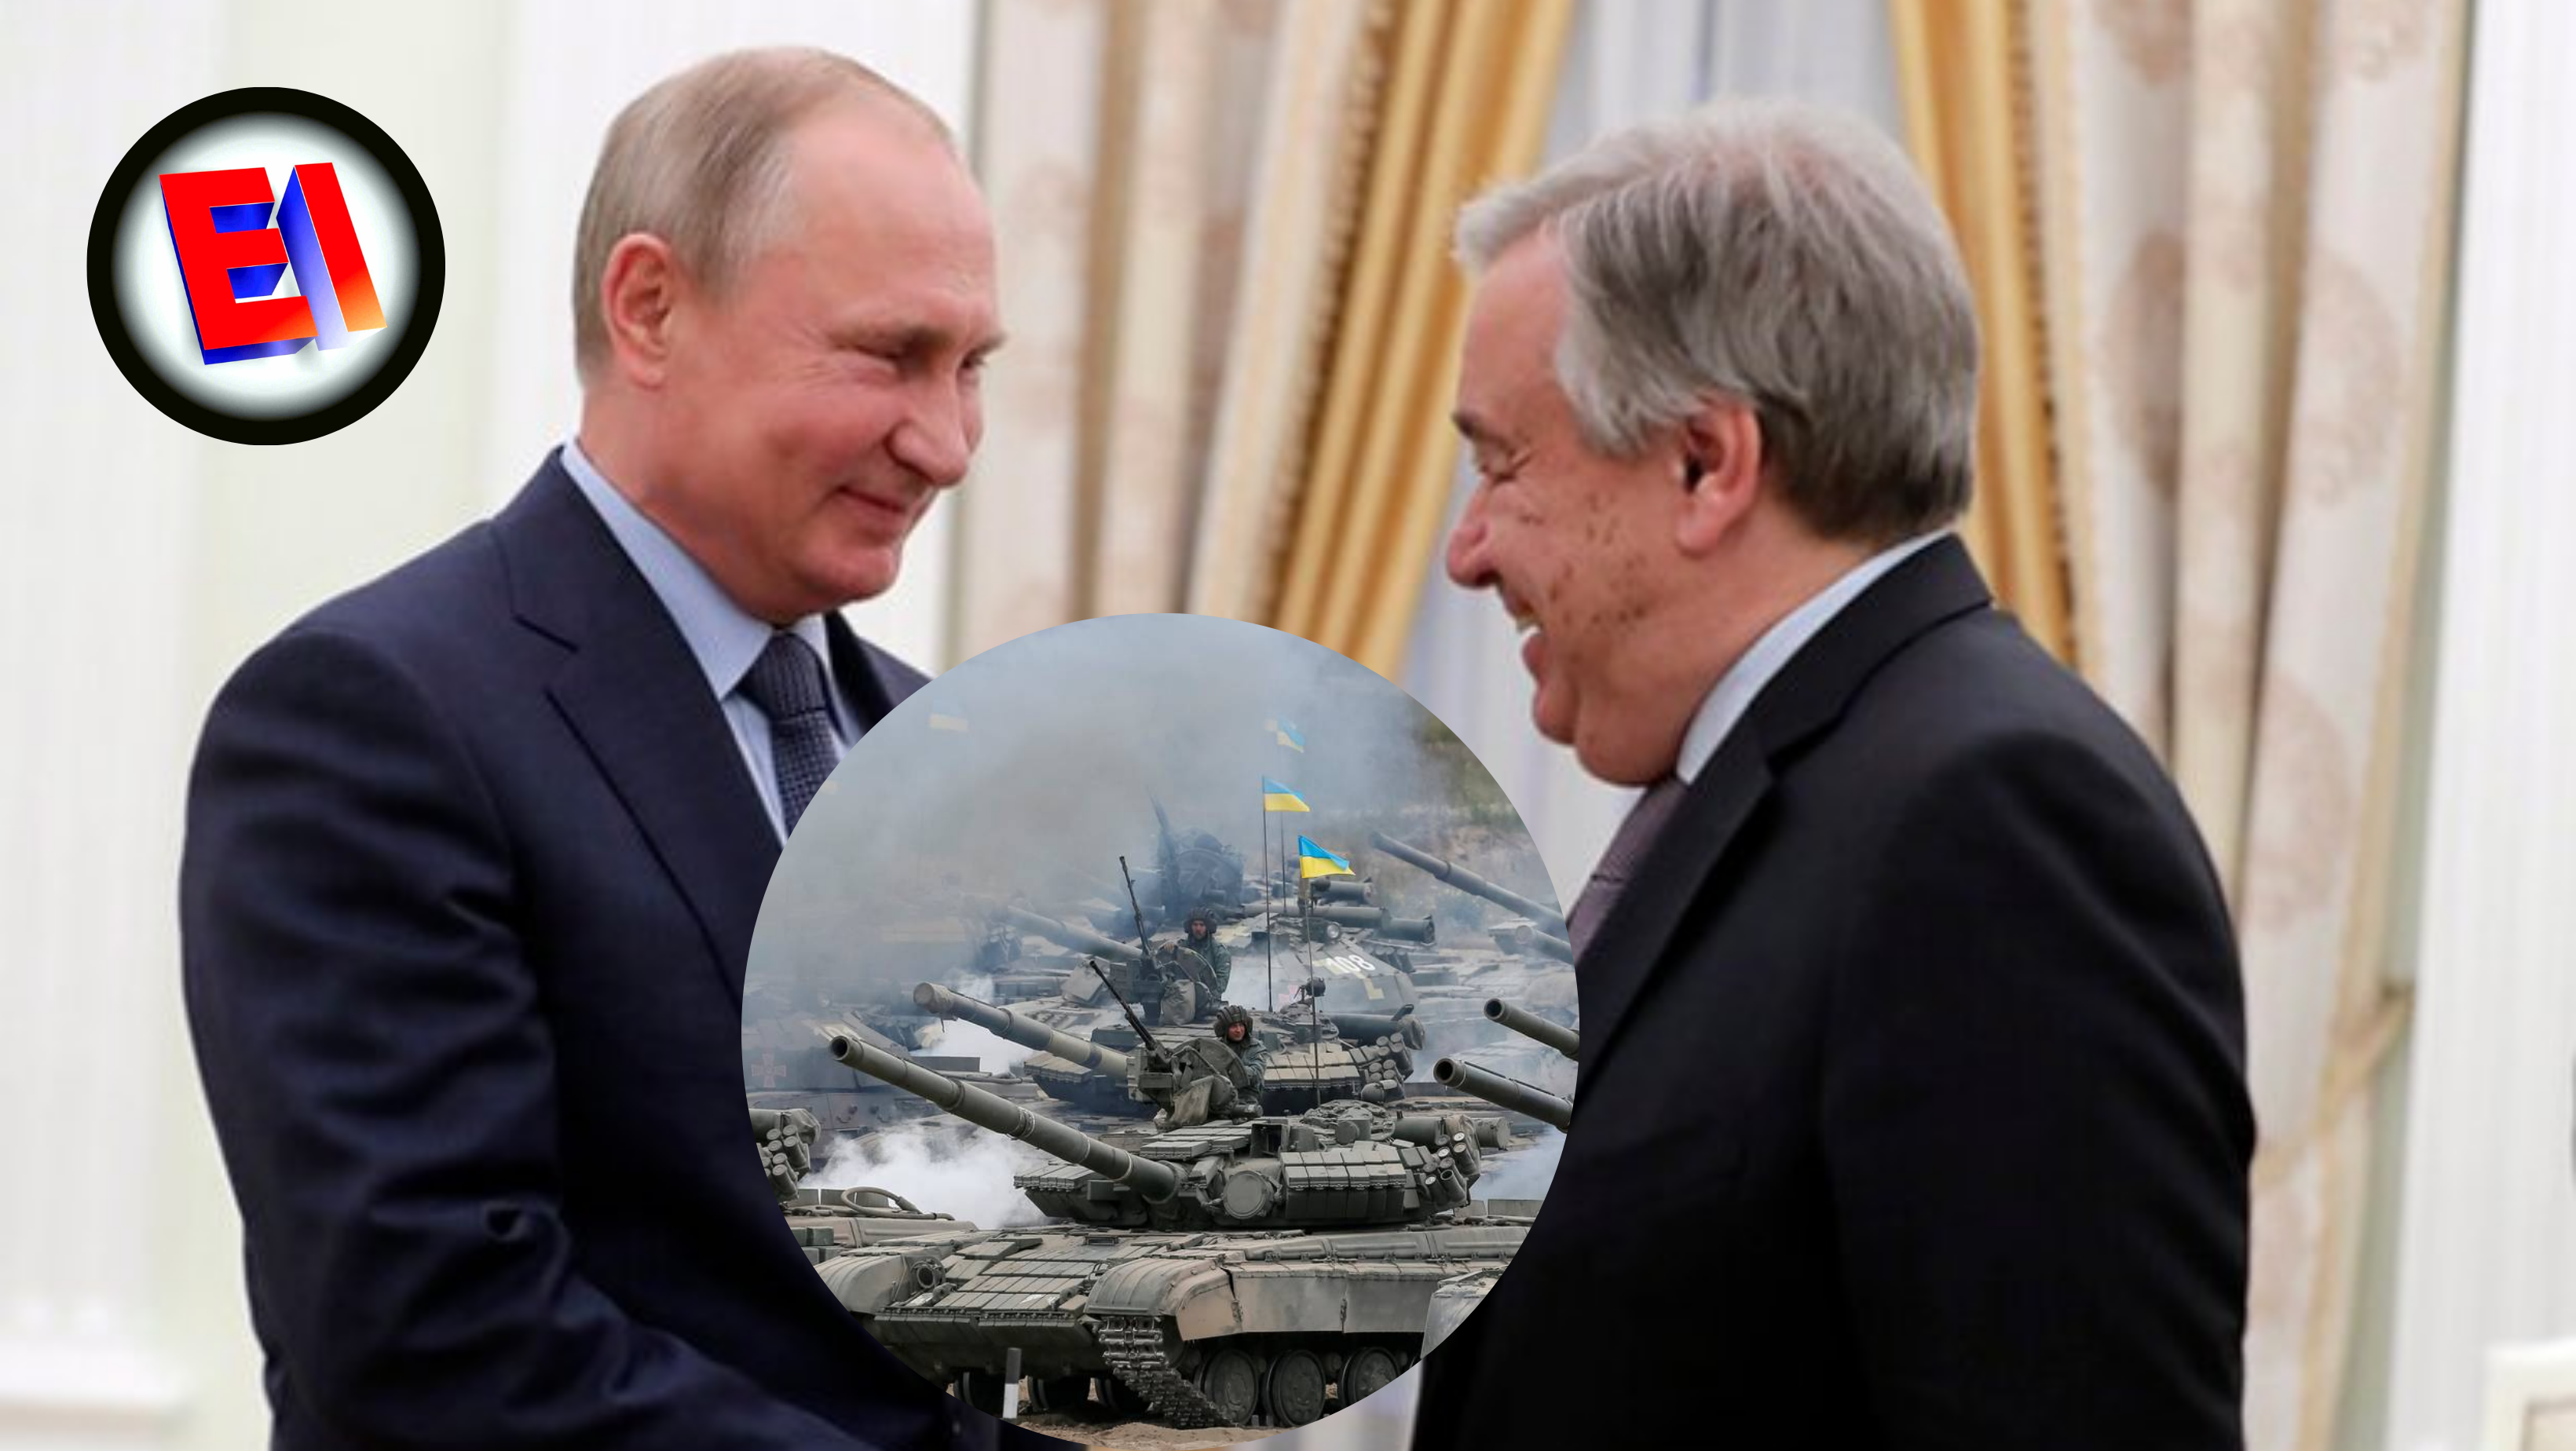 Guerra entre Rusia y Ucrania sin visos de solución